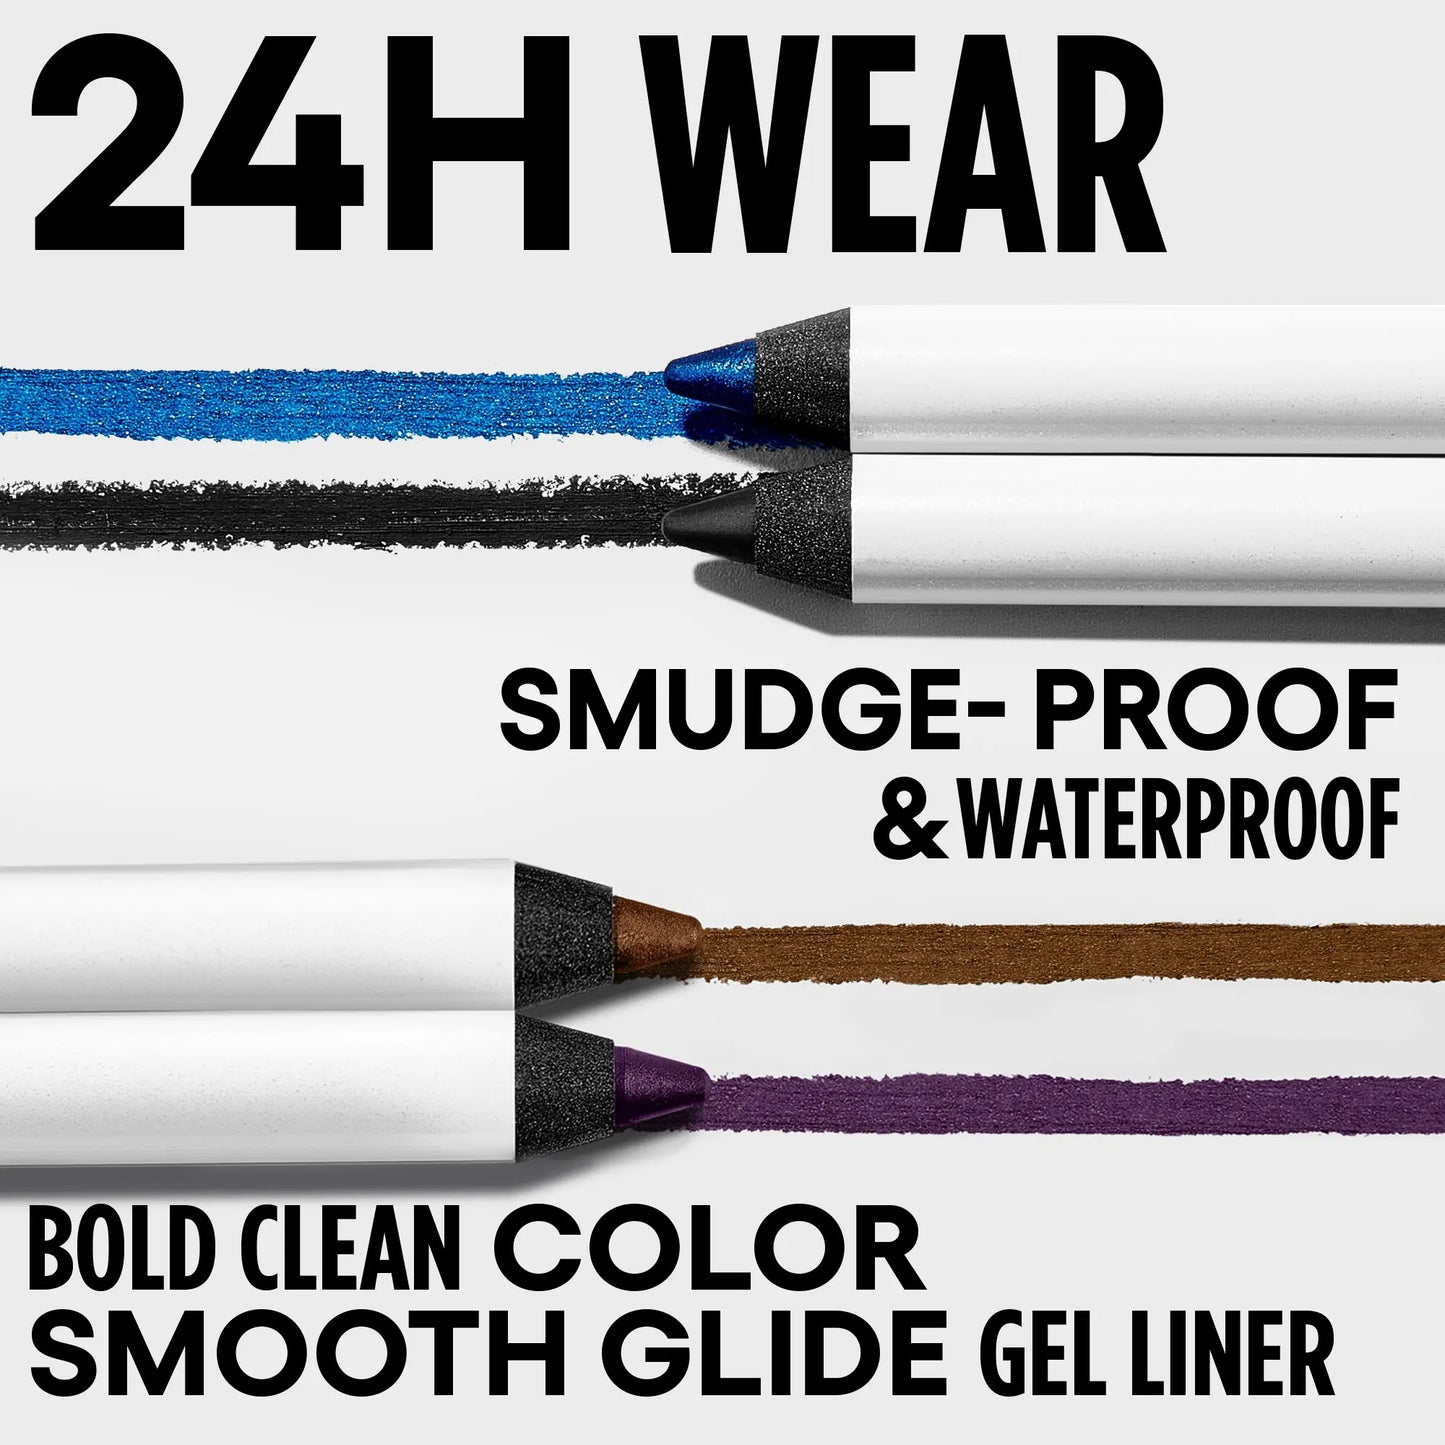 GXVE Actin' Shady - 24hr Waterproof Gel Eyeliner Pencil